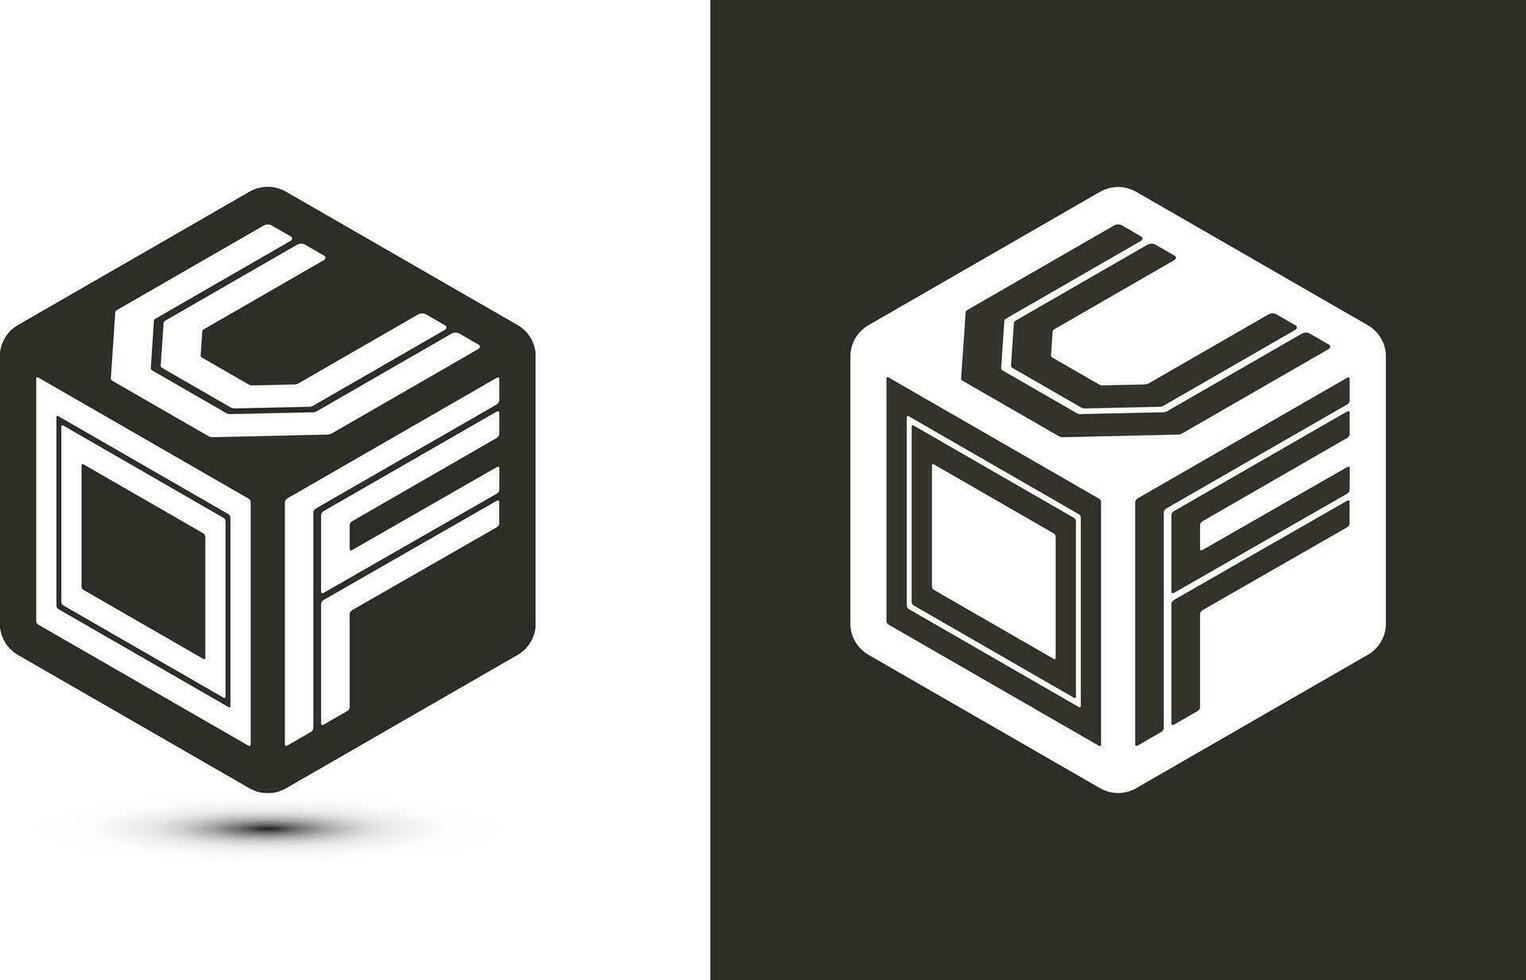 uof brief logo ontwerp met illustrator kubus logo, vector logo modern alfabet doopvont overlappen stijl.